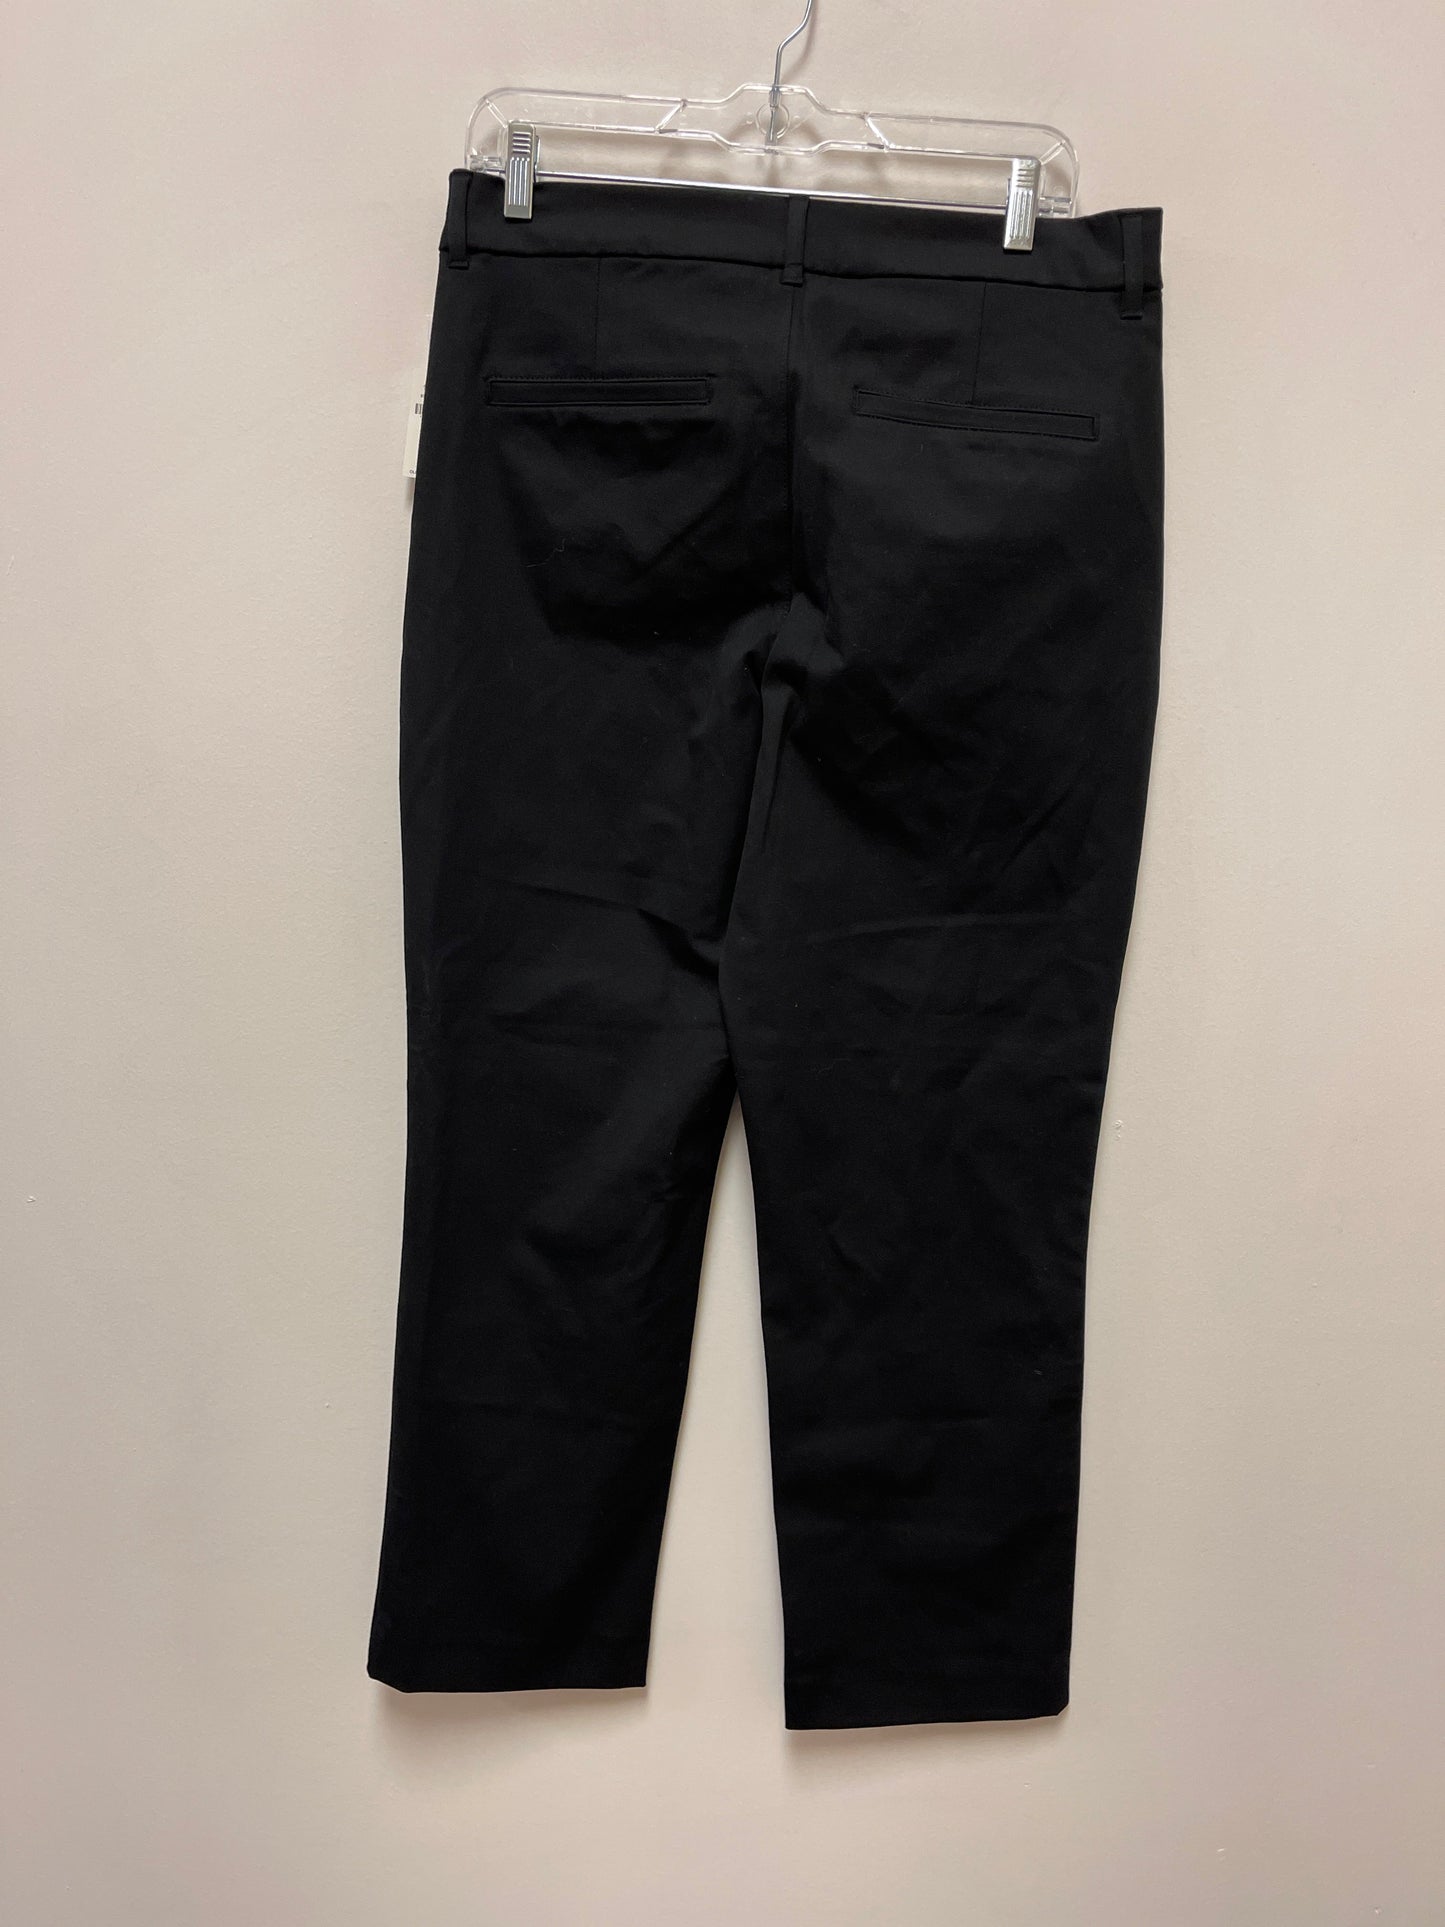 Black Pants Dress Old Navy, Size 10